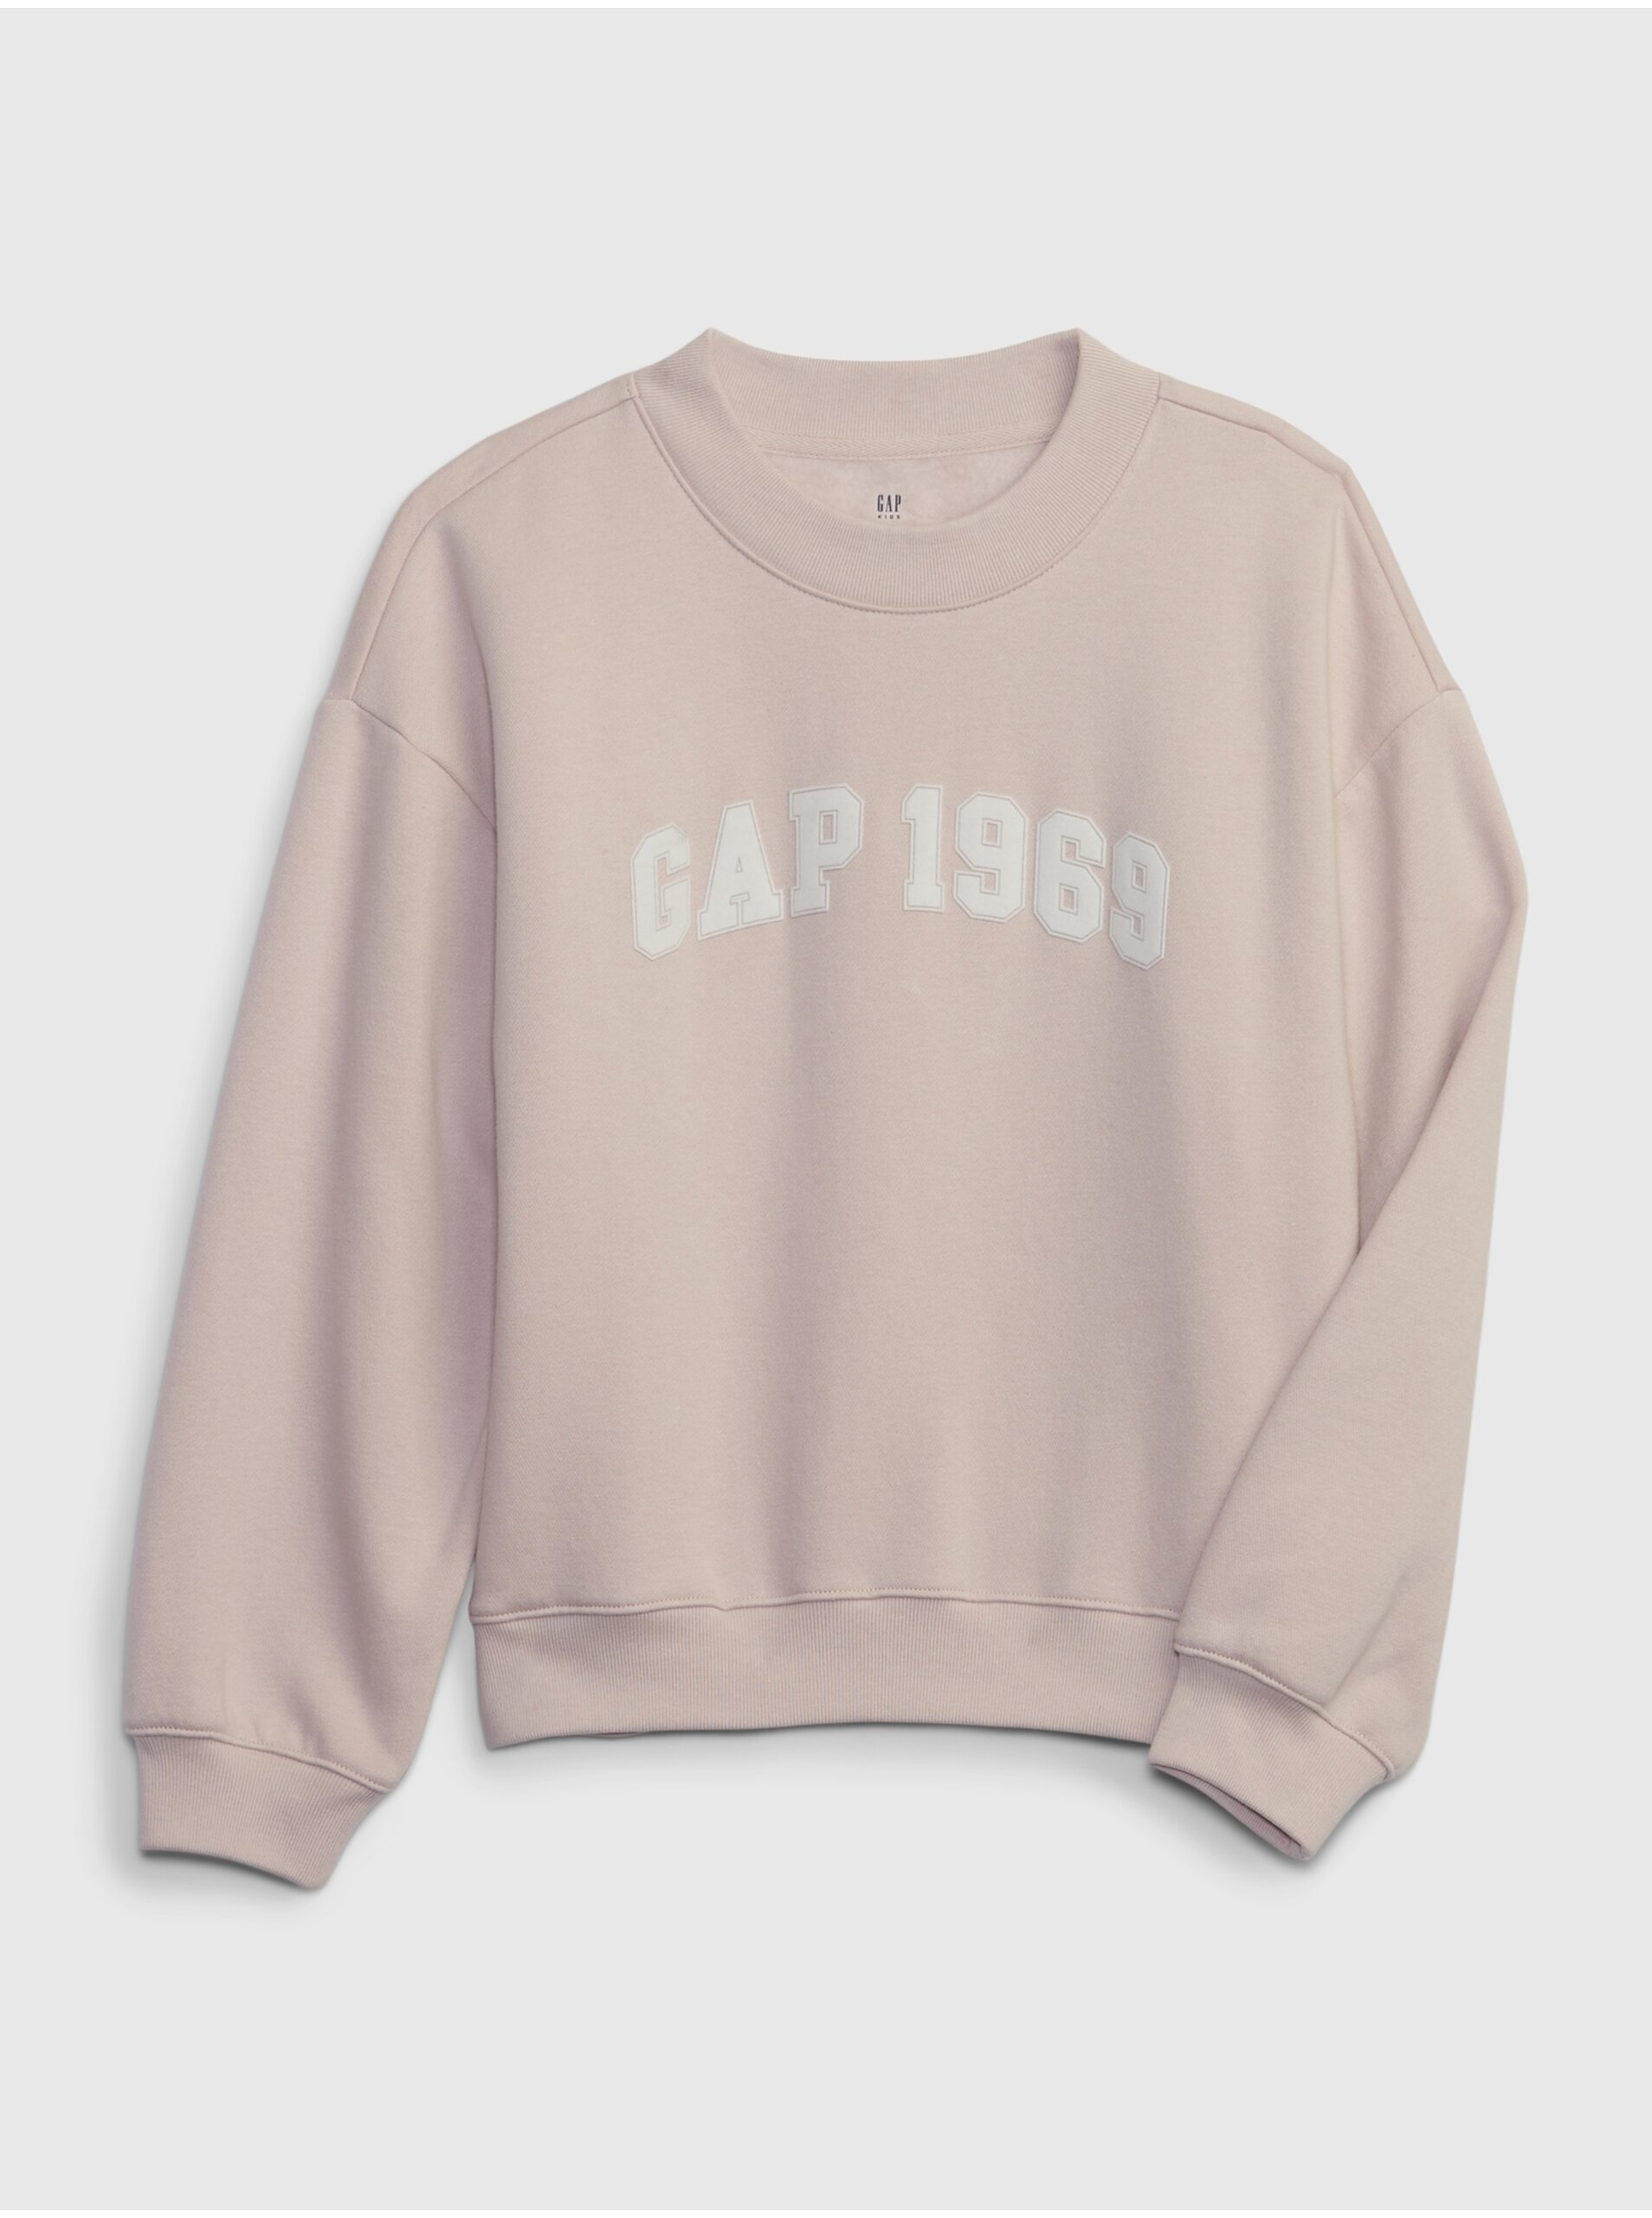 E-shop Světle růžová holčičí mikina s nápisem GAP 1969